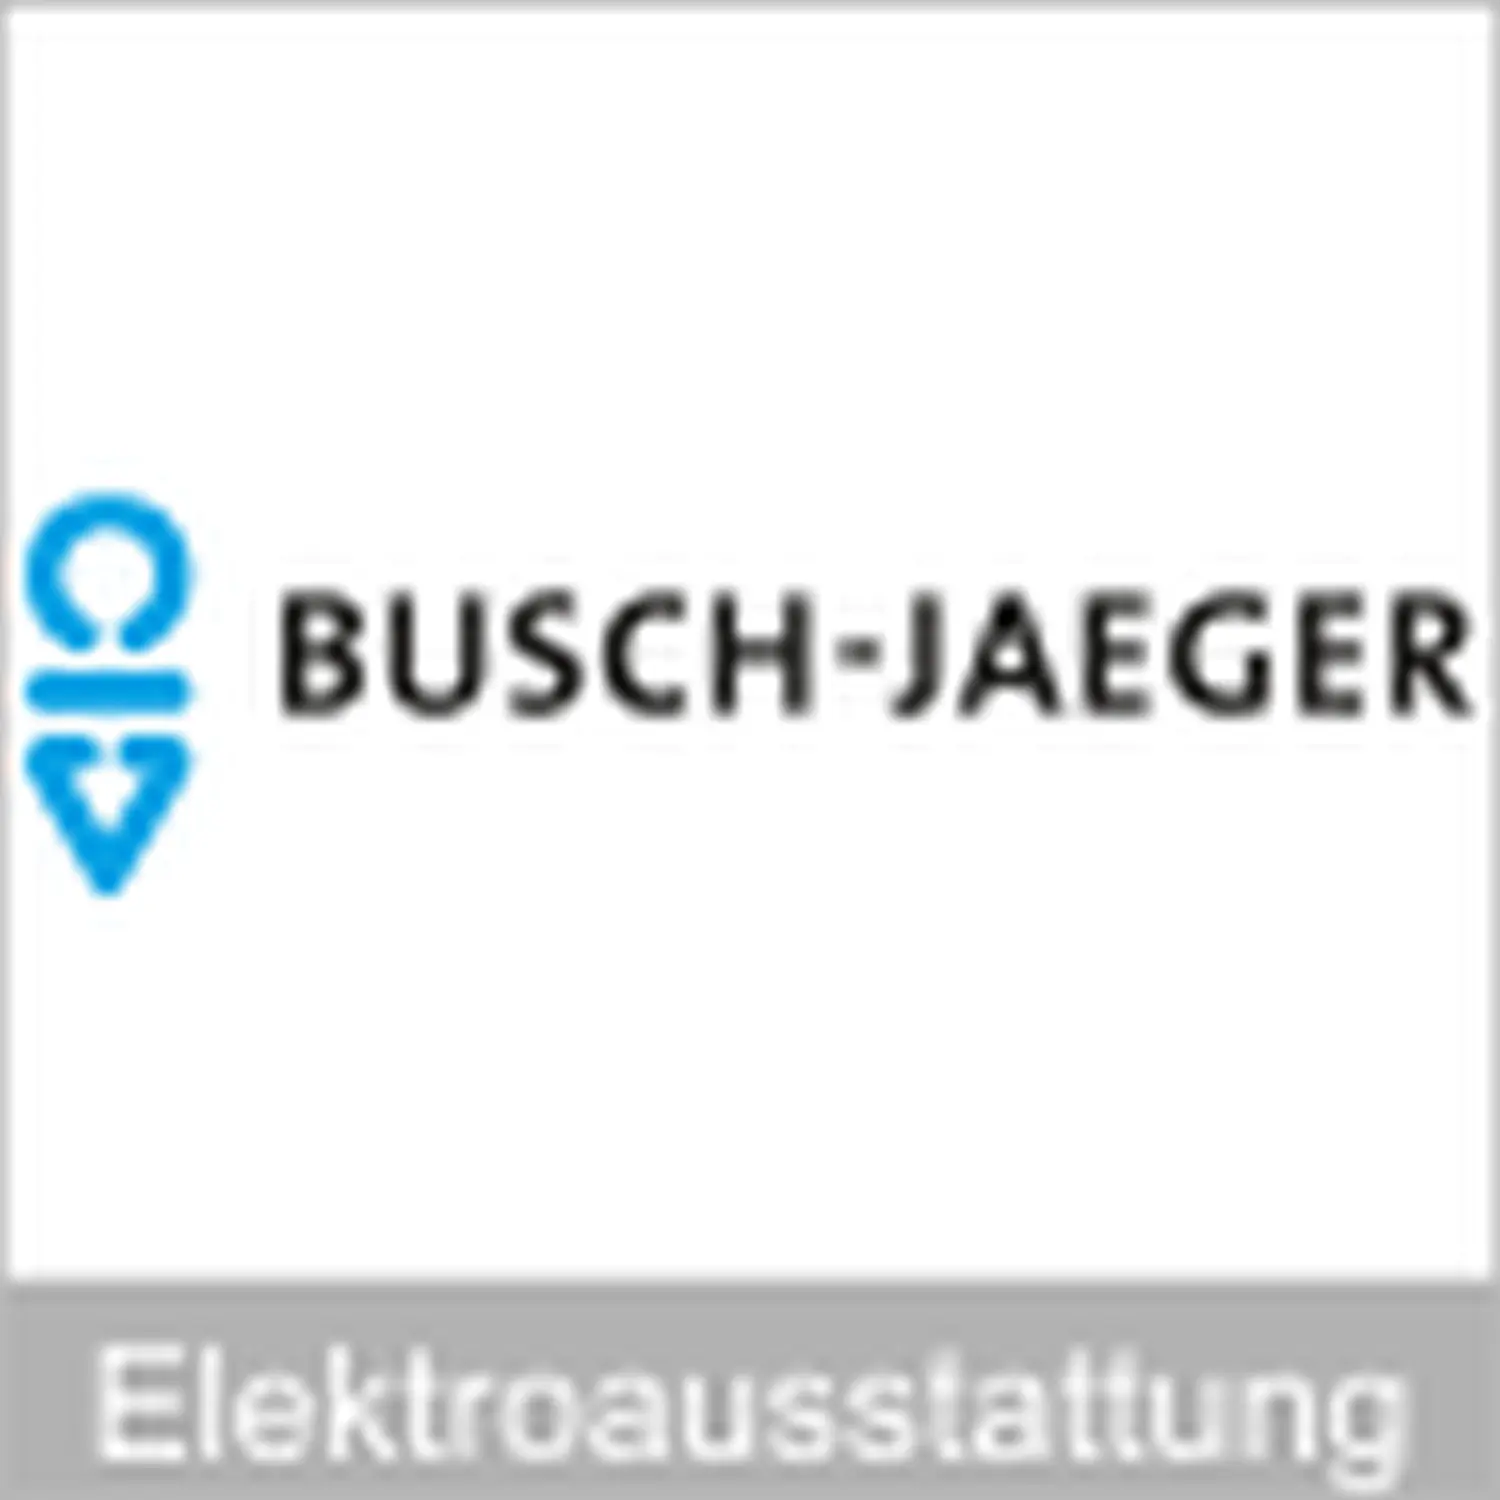 buschjaeger logo